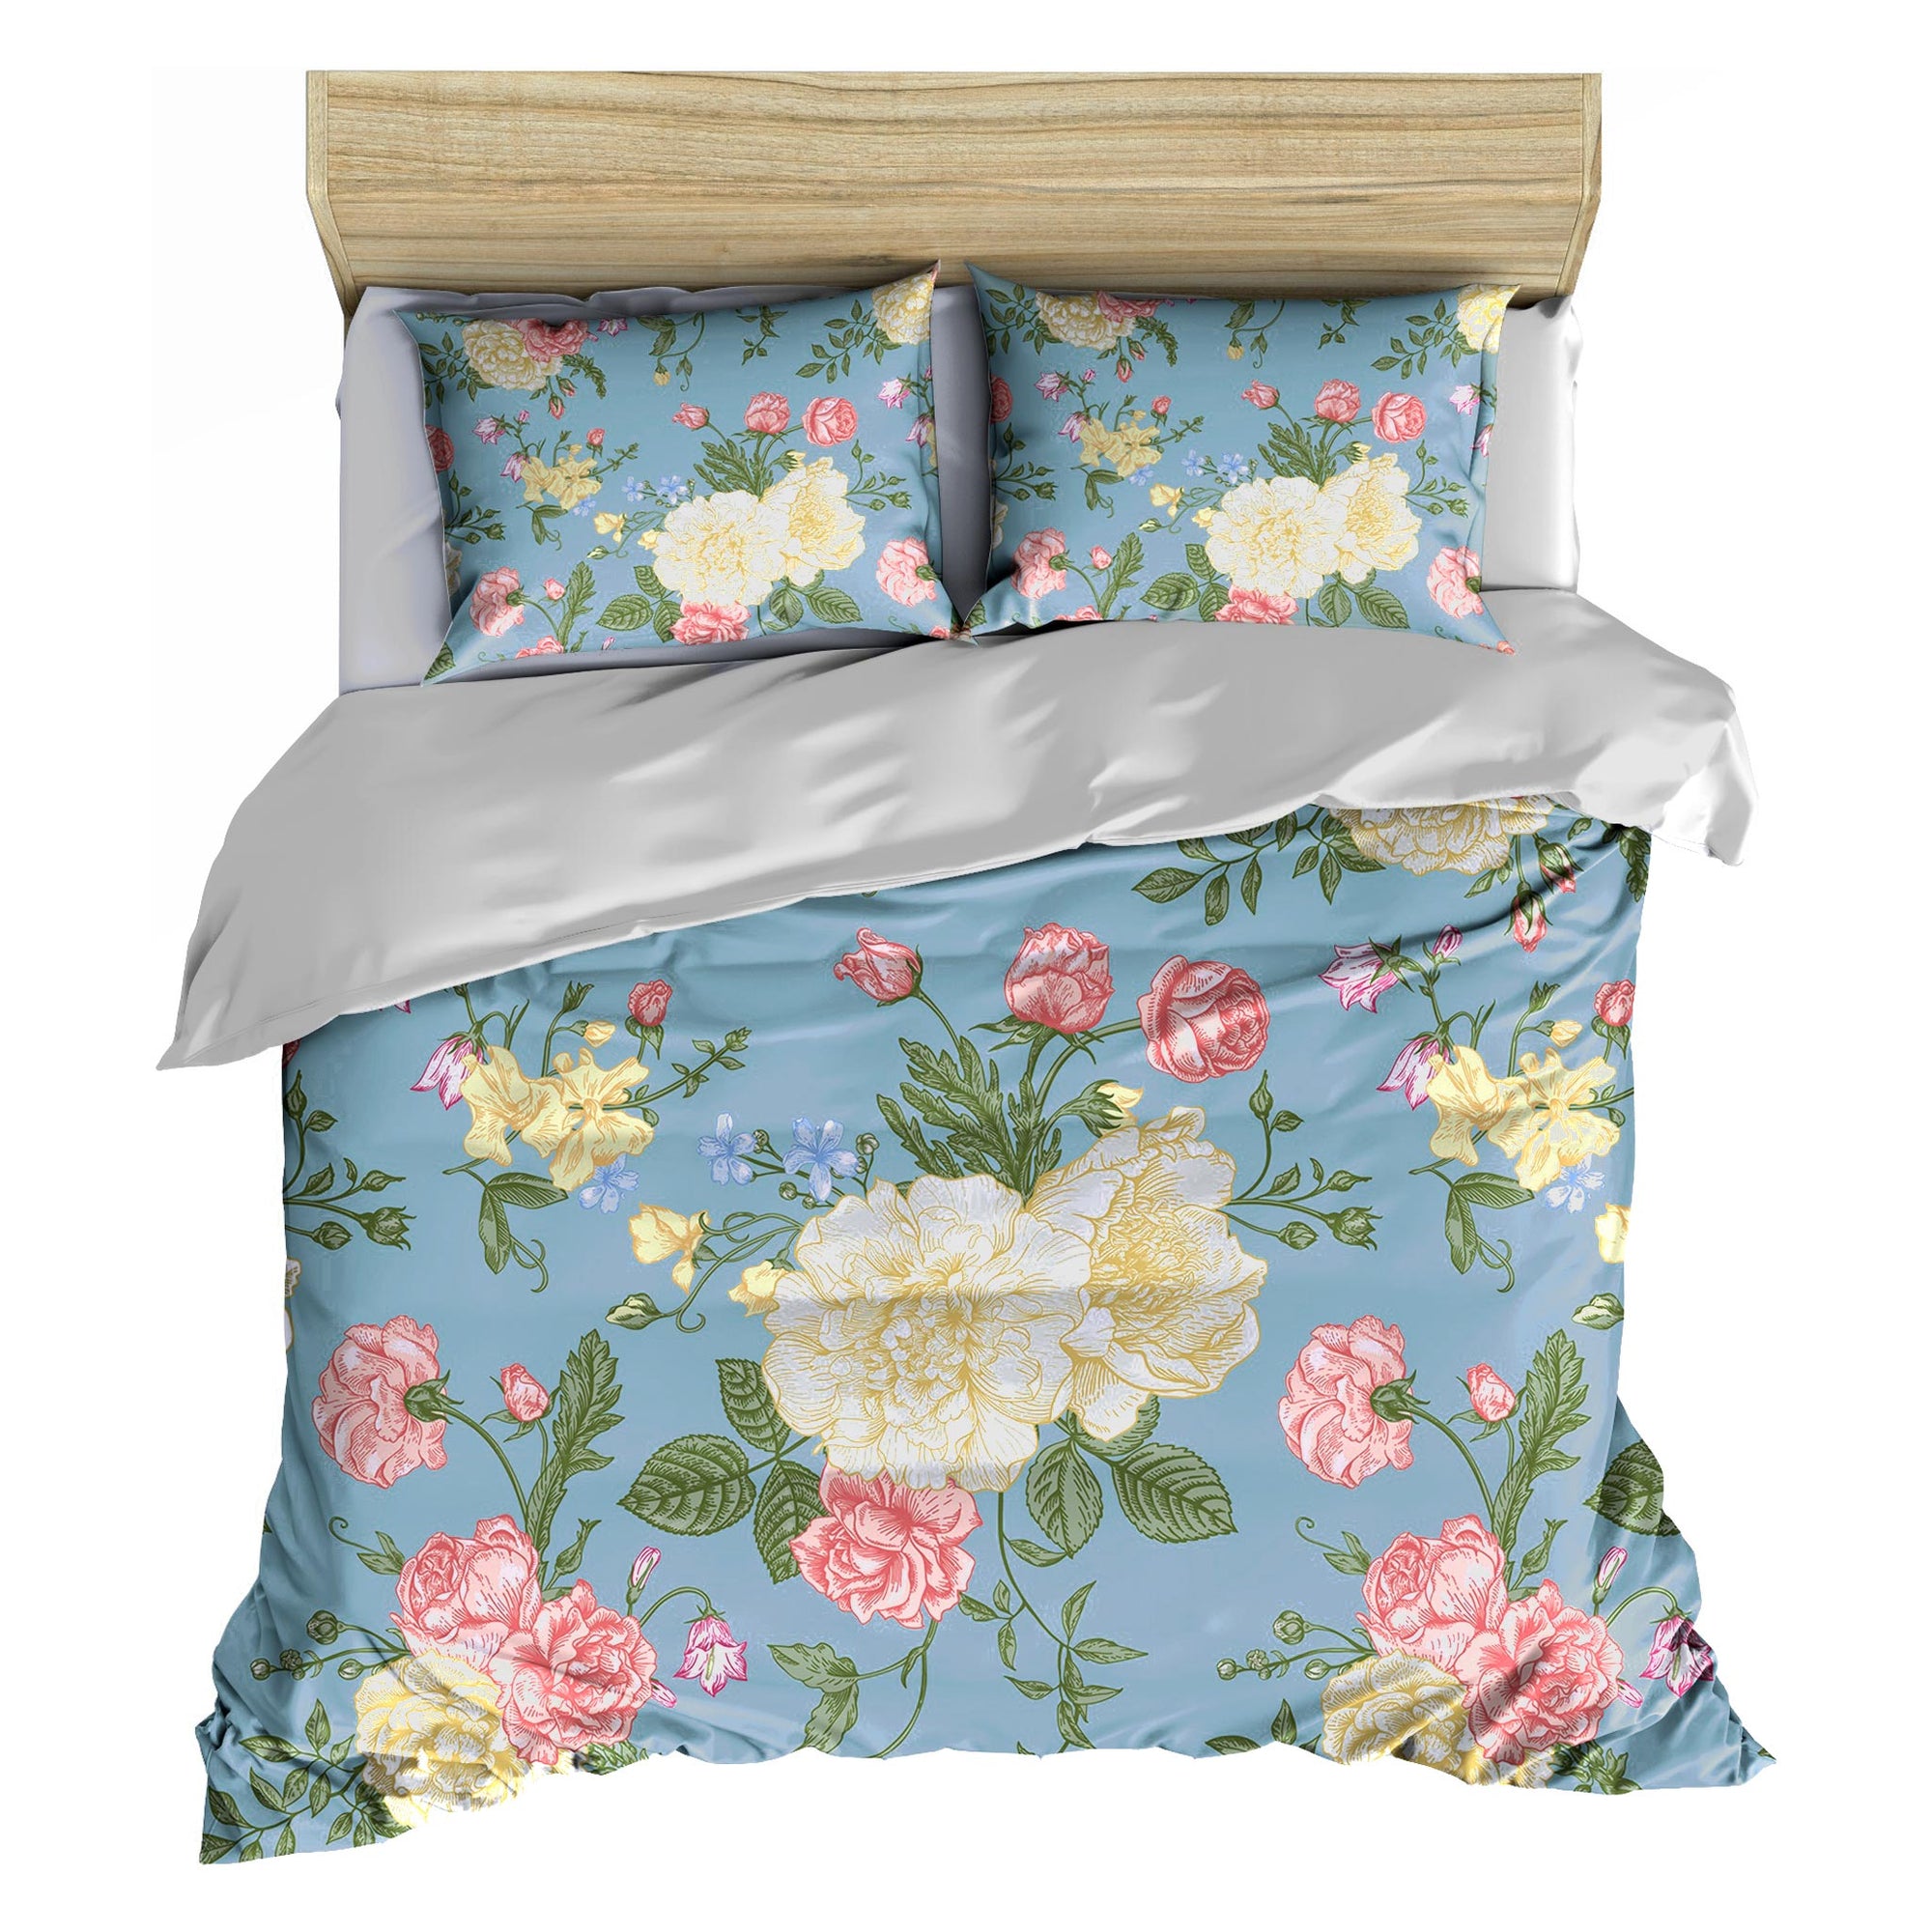 Bettwäsche-Set aus Baumwollperkal mit Meeresblumen-Motiv, Blau mit Blumenmuster